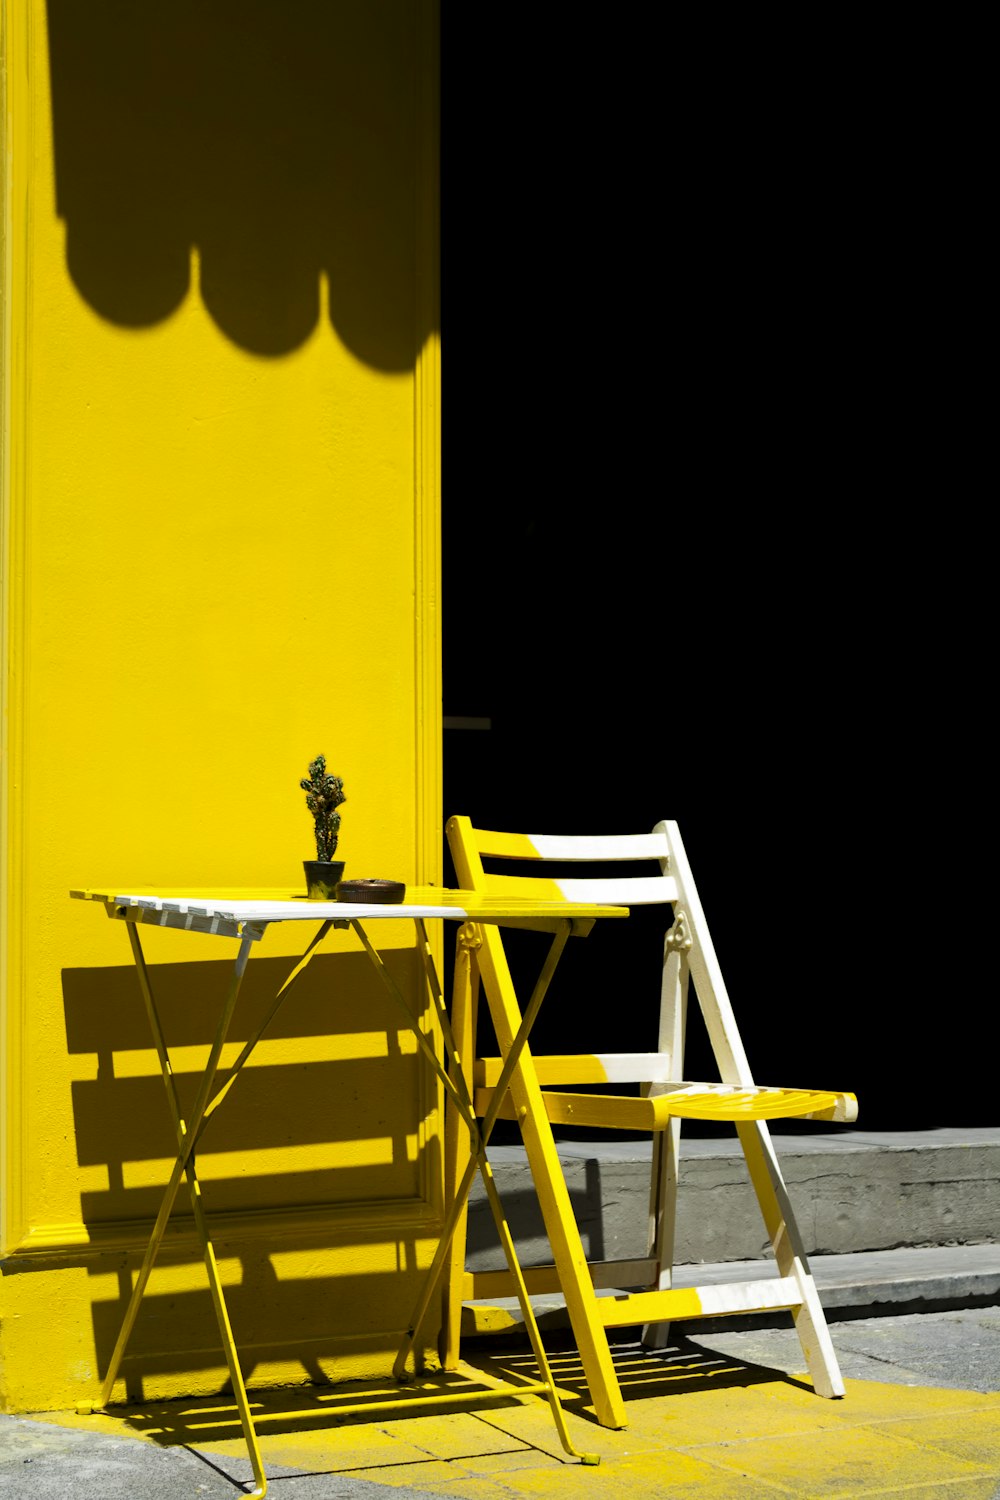 tavolo e sedia pieghevoli vicino al muro giallo